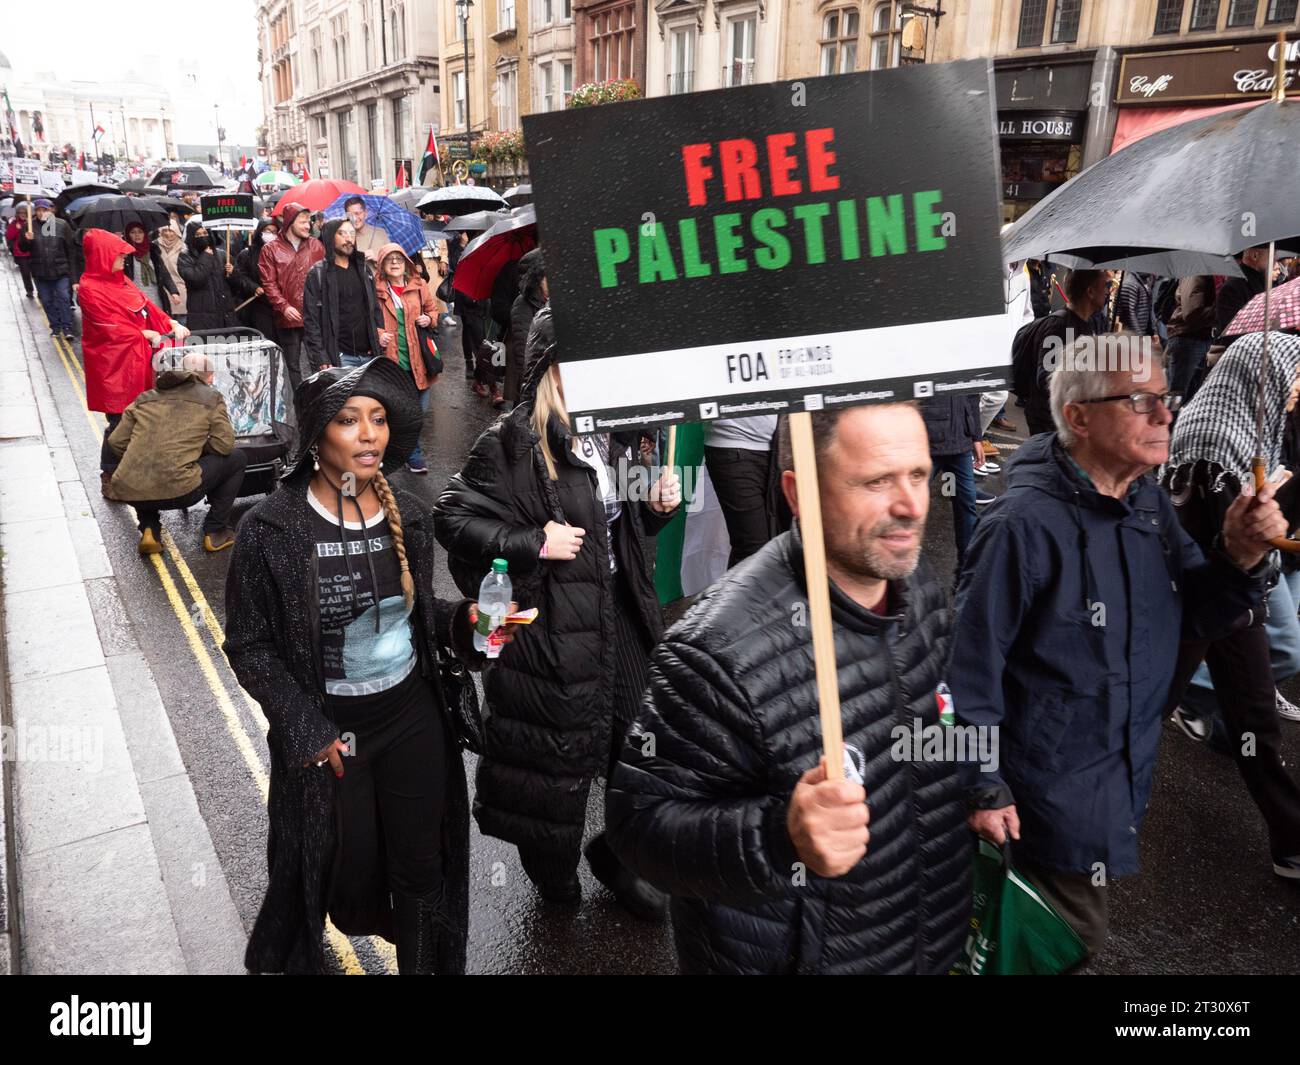 Manifestanti pro-palestinesi a Londra, nel Regno Unito, alla manifestazione della marcia Nazionale per la Palestina fermare la guerra a Gaza, marciare per protestare contro il confict di Israele Palestina sulla Striscia di Gaza. Manifestanti che marciano verso Downing Street con manifesti. Foto Stock